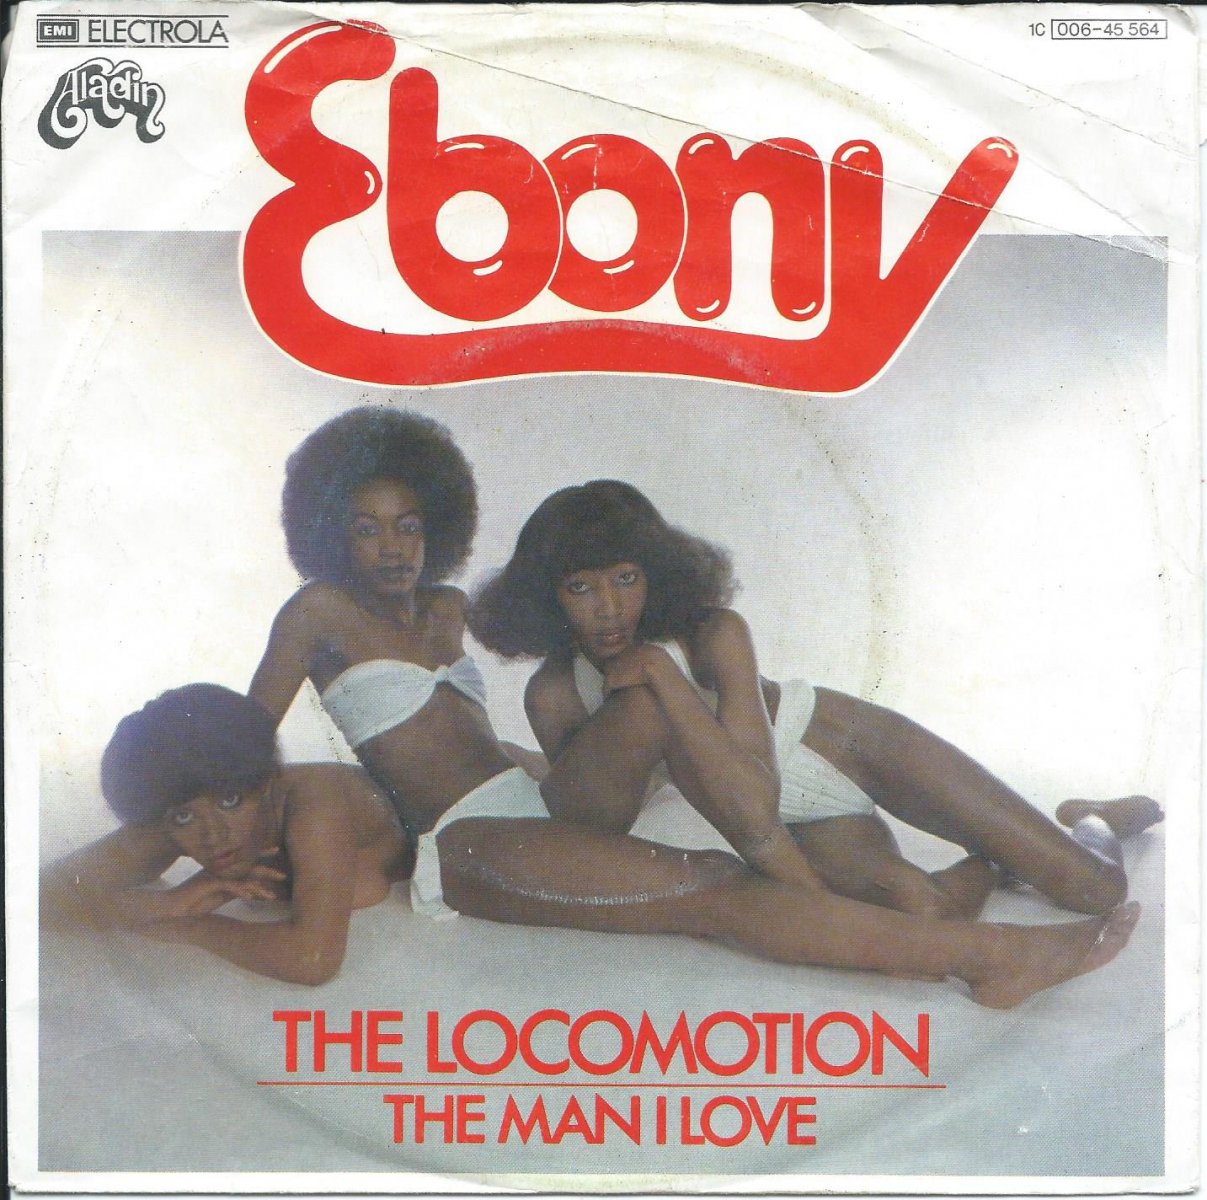 EBONY / THE LOCOMOTION / THE MAN I LOVE (7